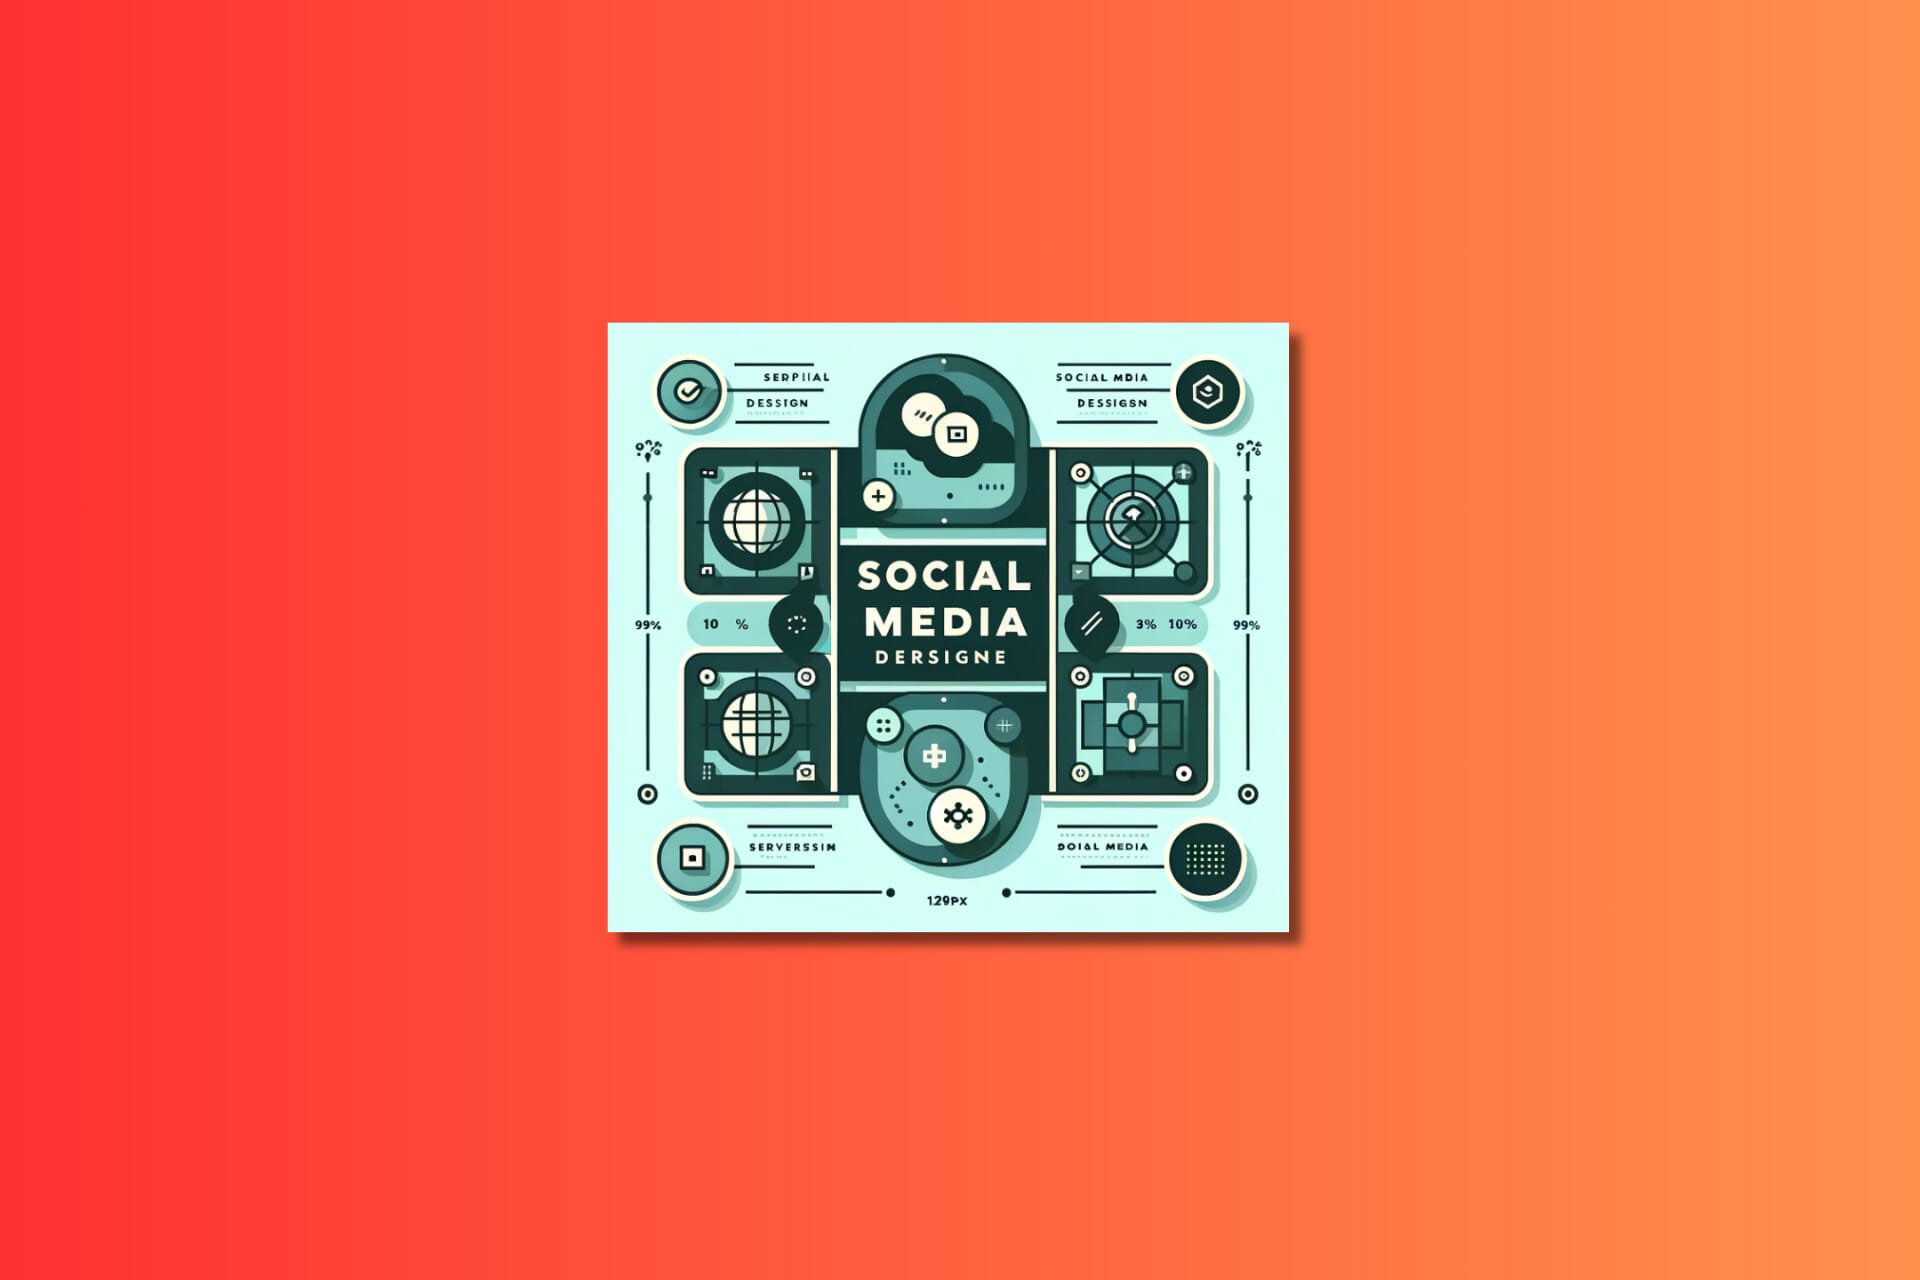 Illustration of social media design concept on orange background.